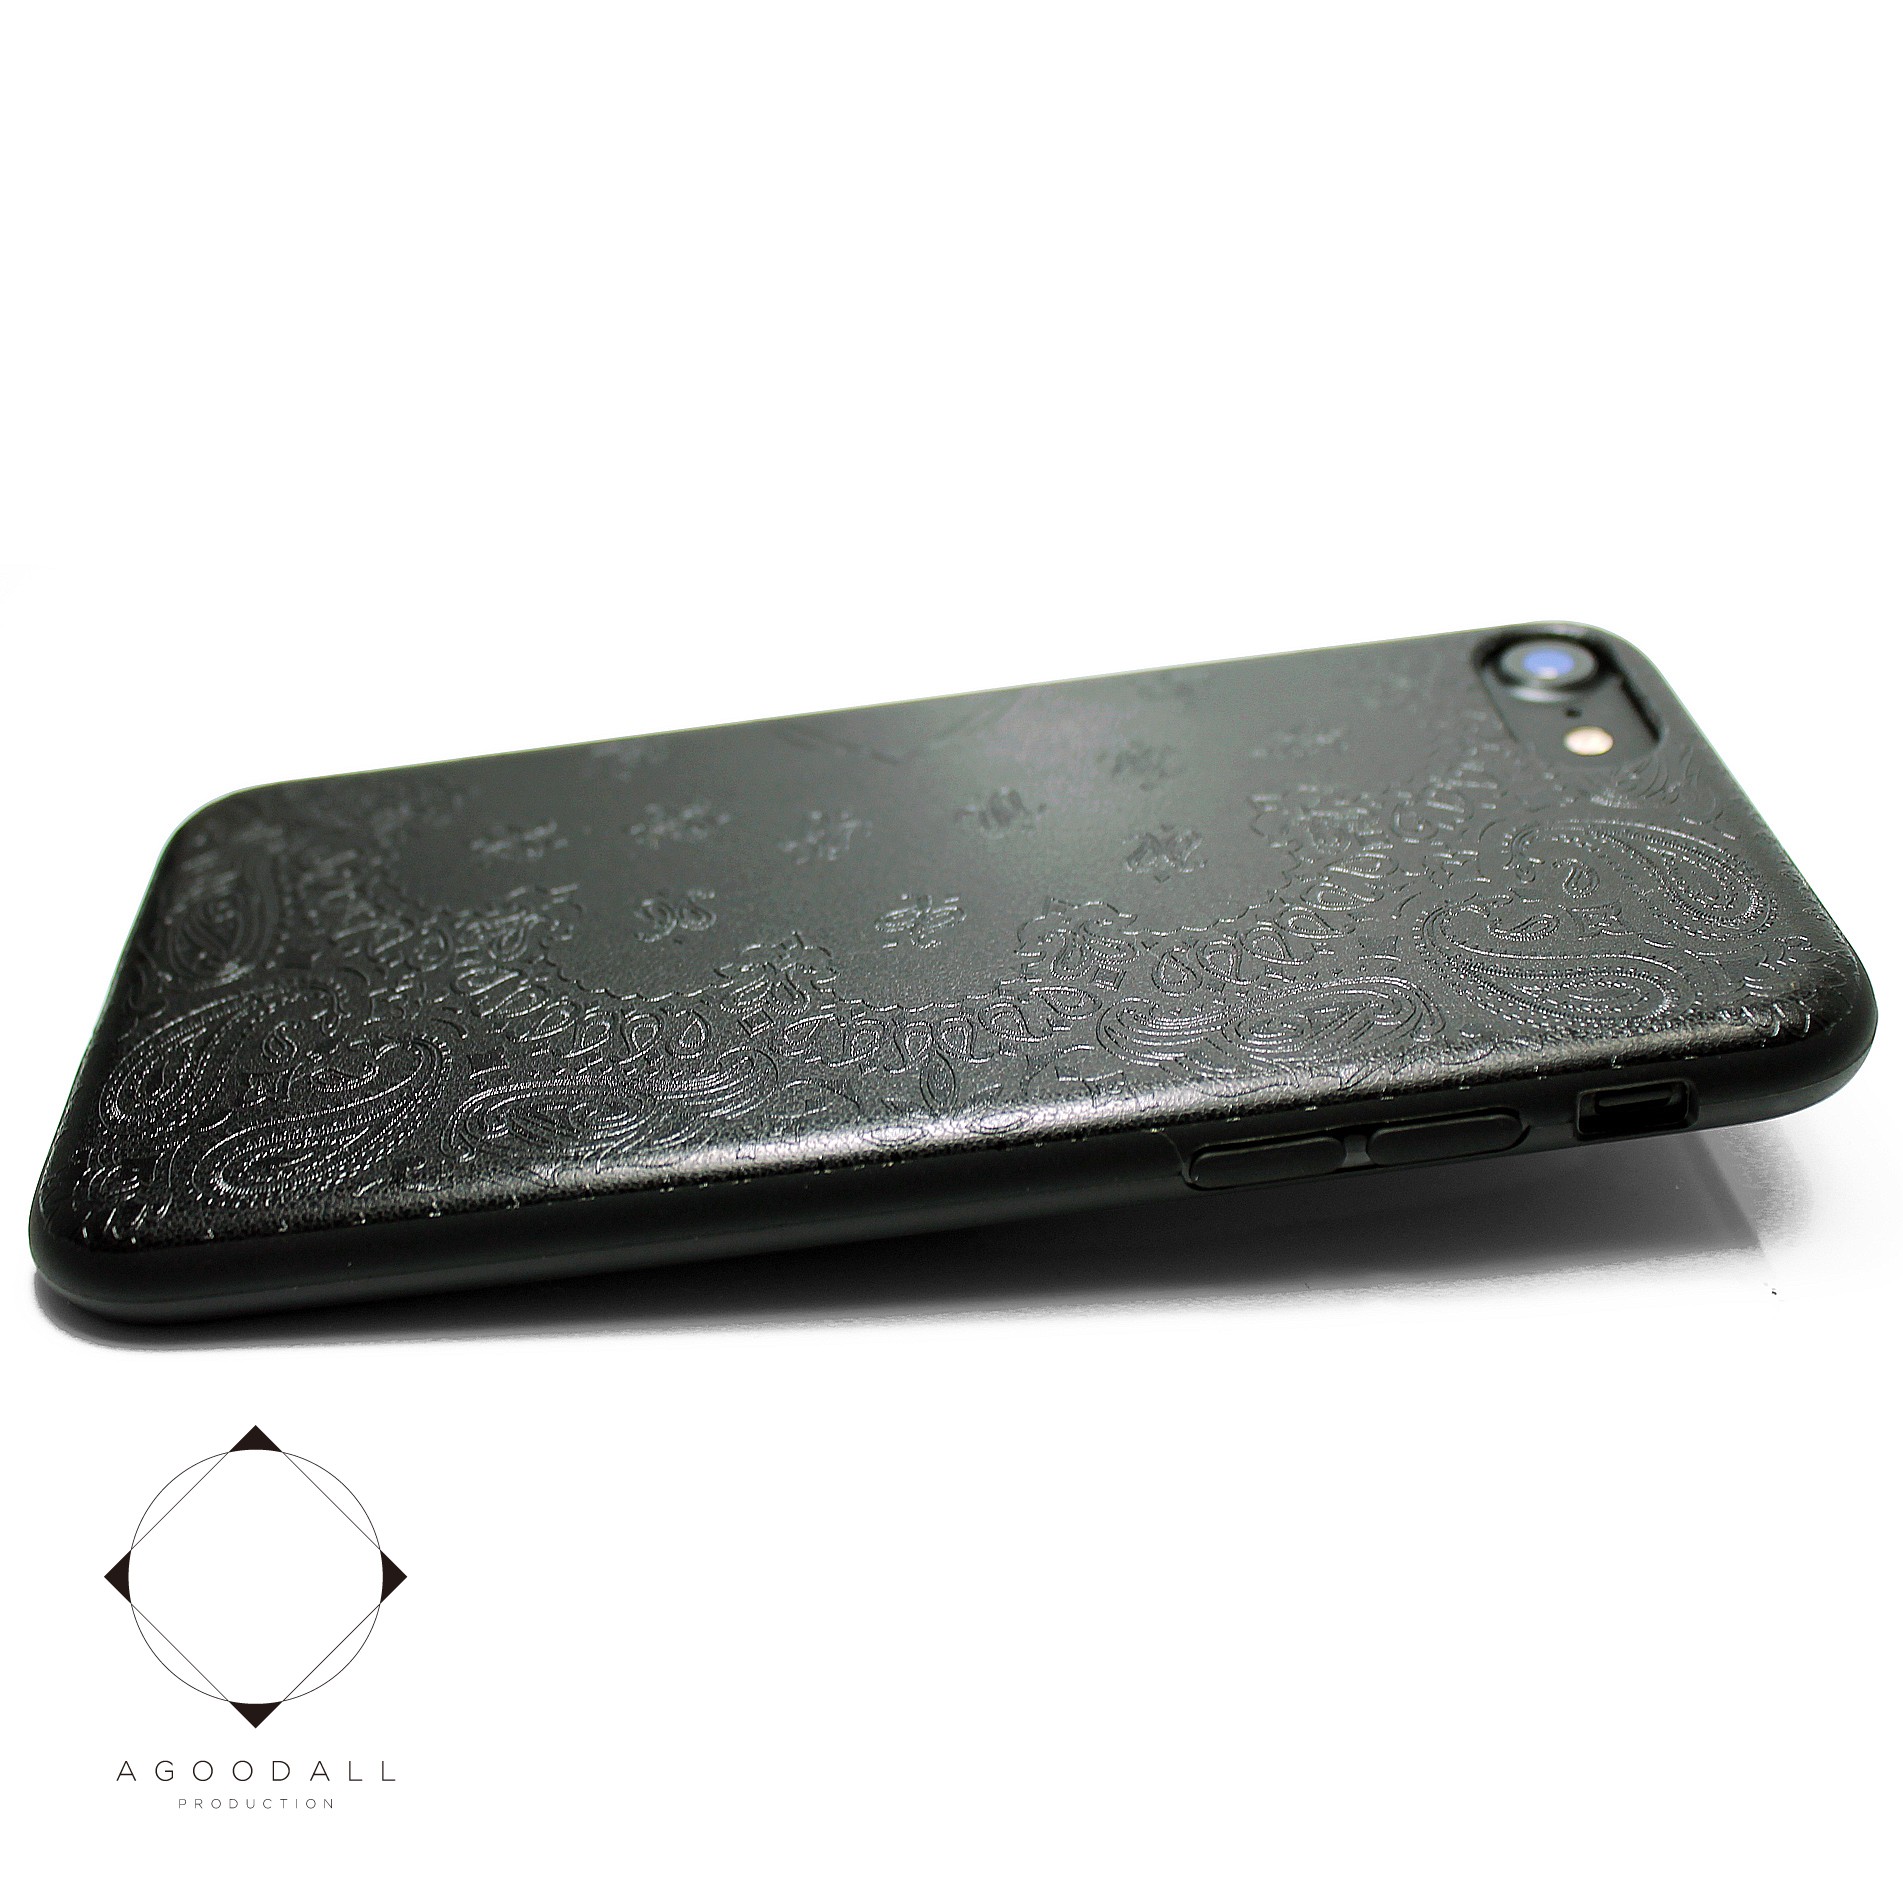 Iphone7 Iphone8 Iphonese2 新型 特殊エンボス加工 レザーケースカバー ペイズリー ブラック Iichi ハンドメイド クラフト作品 手仕事品の通販